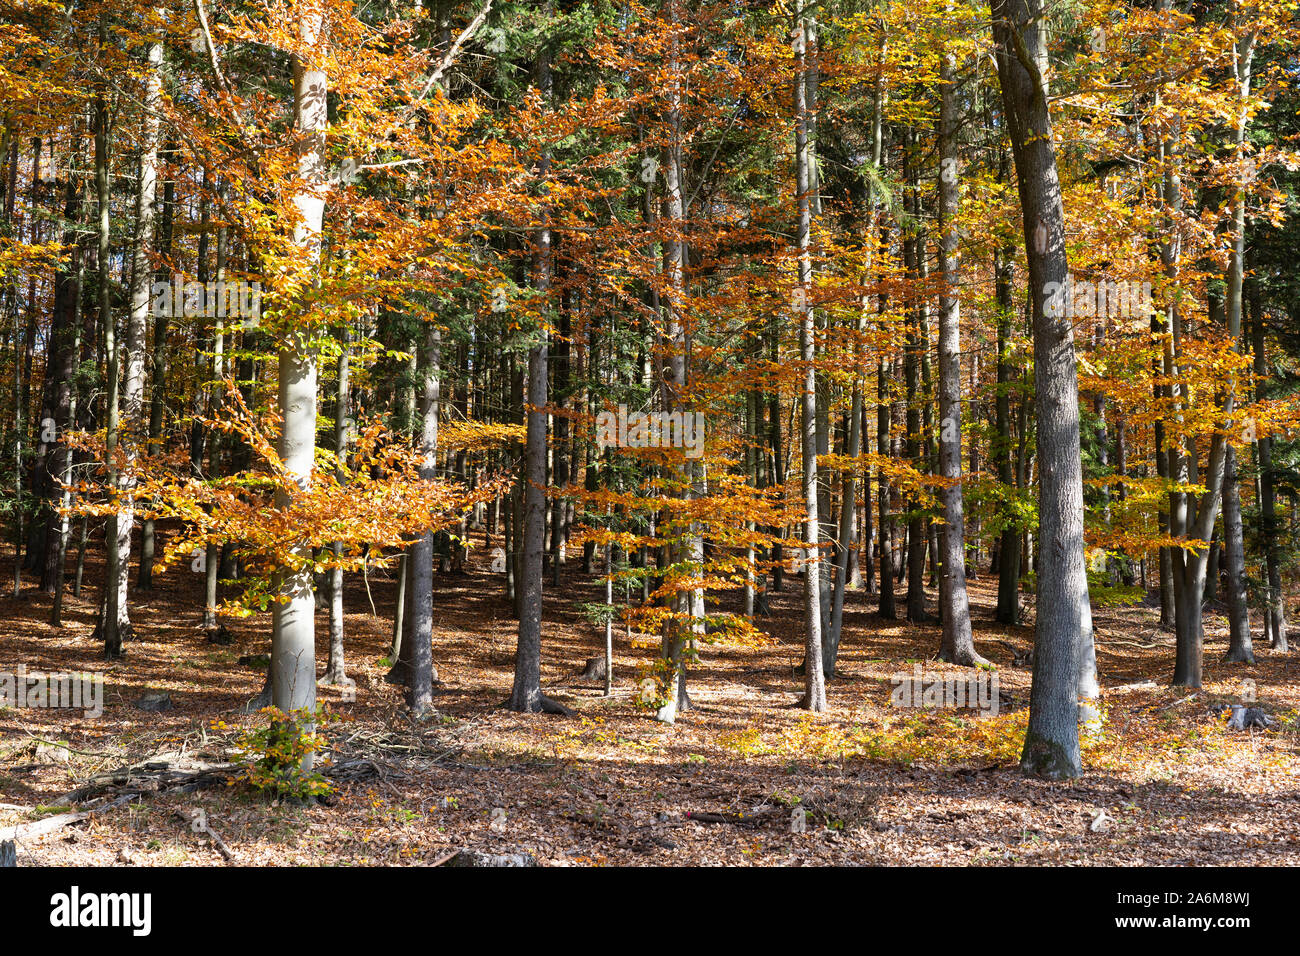 Colorate di alberi di faggio (Fagus sylvatica) e abete Douglas (Pseudotsuga menziesii) in una foresta in autunno / caduta di colore giallo e con foglie d'arancio, Austria Foto Stock